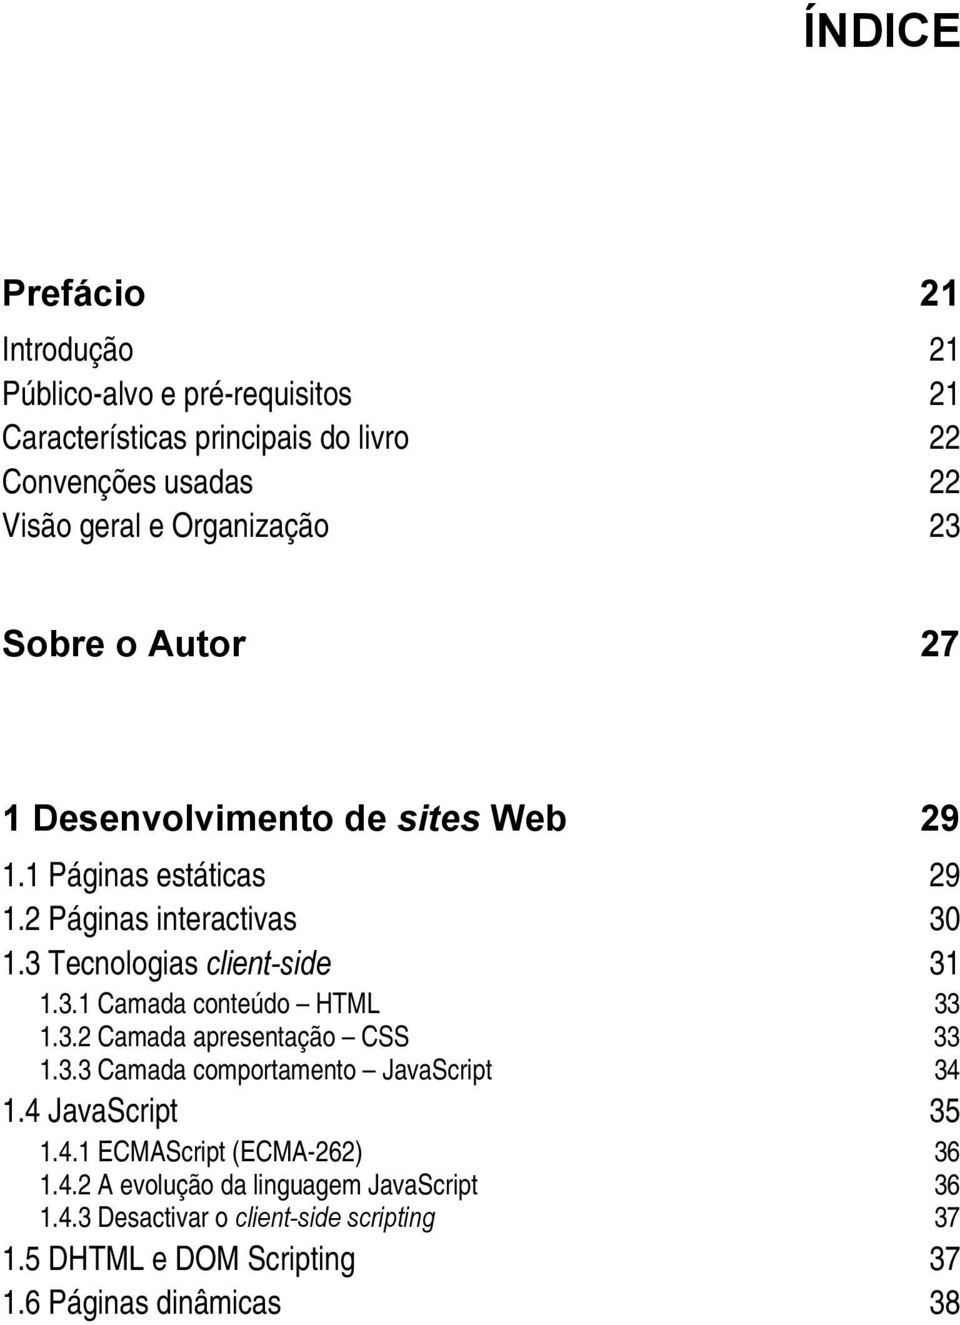 3 Tecnologias client-side 31 1.3.1 Camada conteúdo HTML 33 1.3.2 Camada apresentação CSS 33 1.3.3 Camada comportamento JavaScript 34 1.